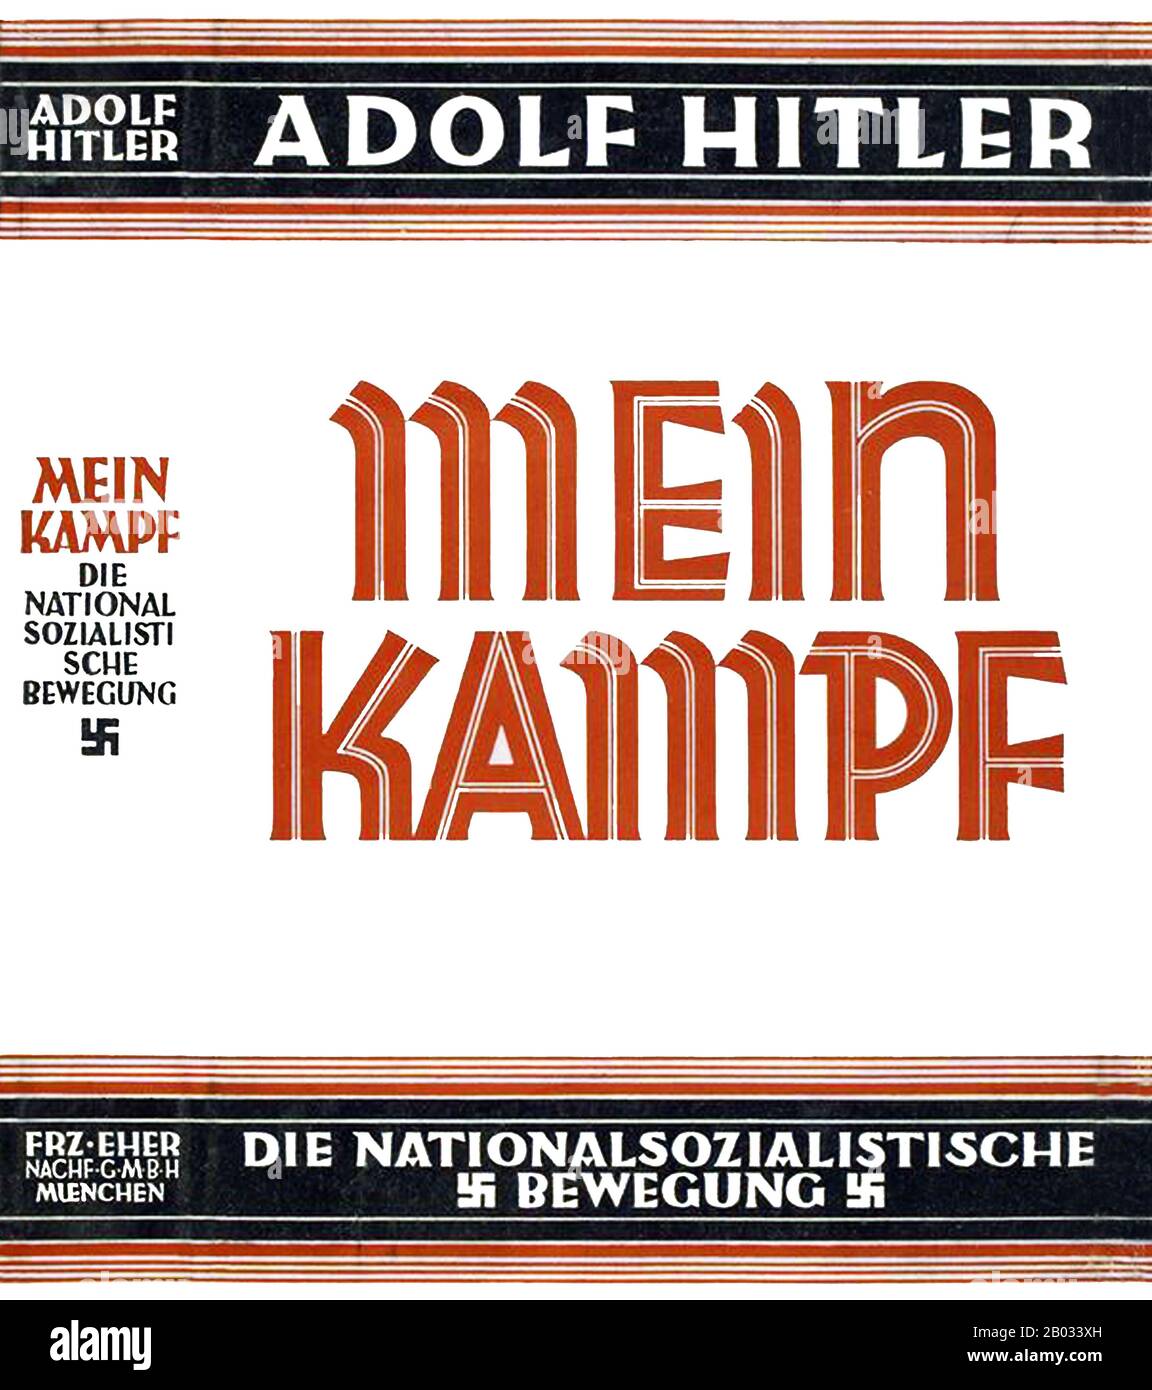 Mein Kampf è un'autobiografia del leader nazionalsocialista Adolf Hitler, in cui delinea la sua ideologia politica e i piani futuri per la Germania. Il volume 1 di Mein Kampf fu pubblicato nel 1925 e il volume 2 nel 1926. Hitler iniziò a dettare il libro a Rudolf Hess (1894 - 1987) mentre era imprigionato per quello che considerava 'crimini politici' a seguito del suo fallito Putsch a Monaco di Baviera nel novembre 1923. Anche se Hitler ricevette inizialmente molti visitatori, presto si dedicò interamente al libro. Nel 2016, dopo la scadenza del copyright detenuto dal governo bavarese, Mein Kampf lo è stato Foto Stock